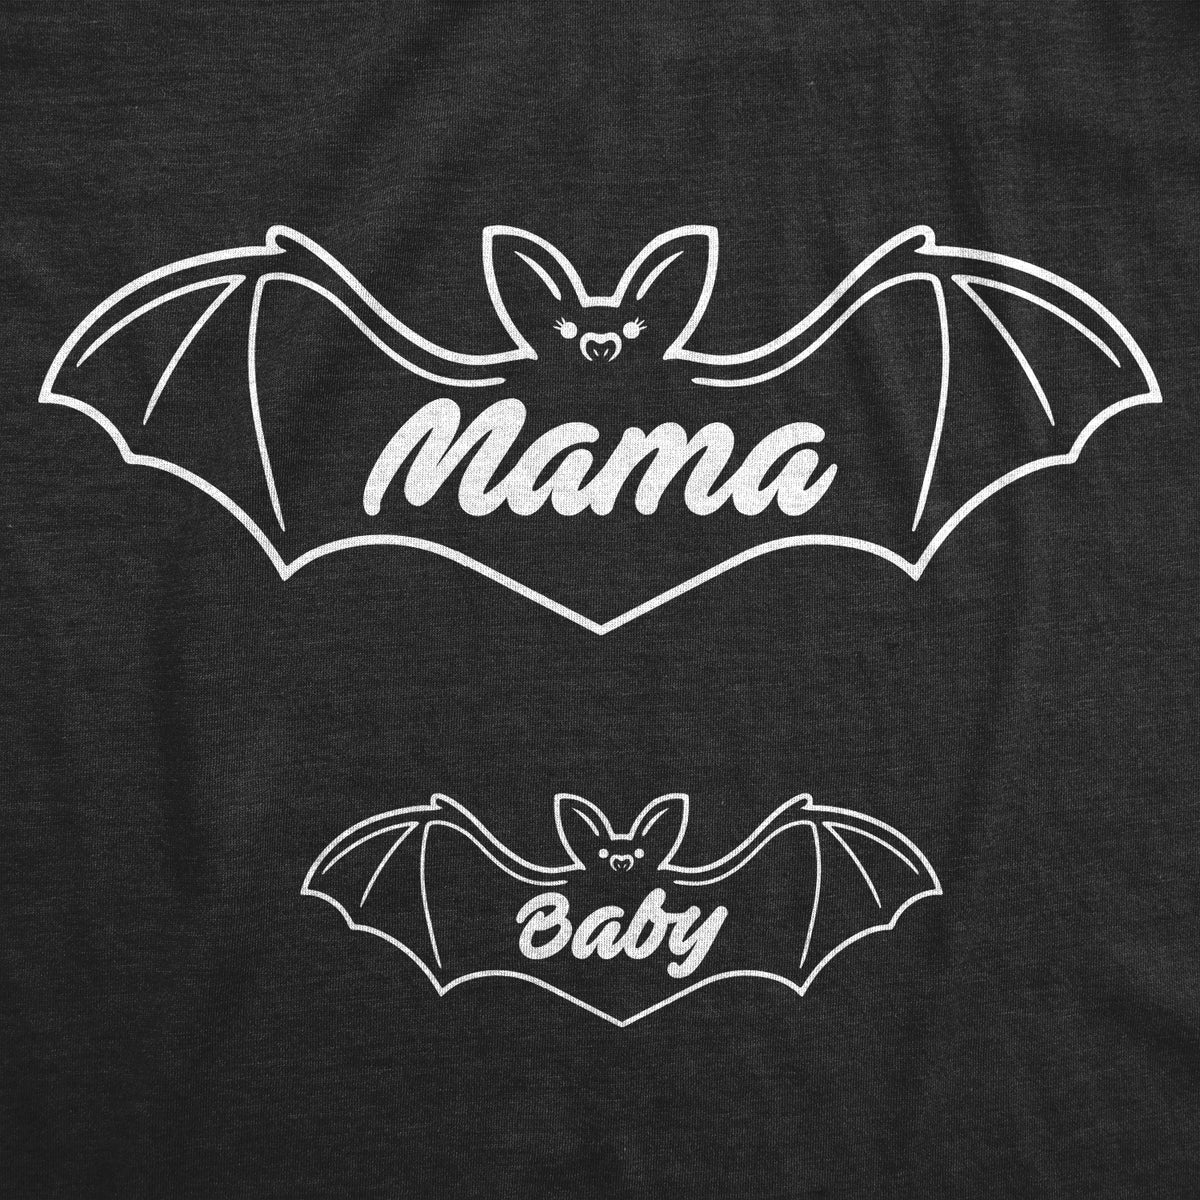 Mama Bat Baby Bat Maternity T Shirt